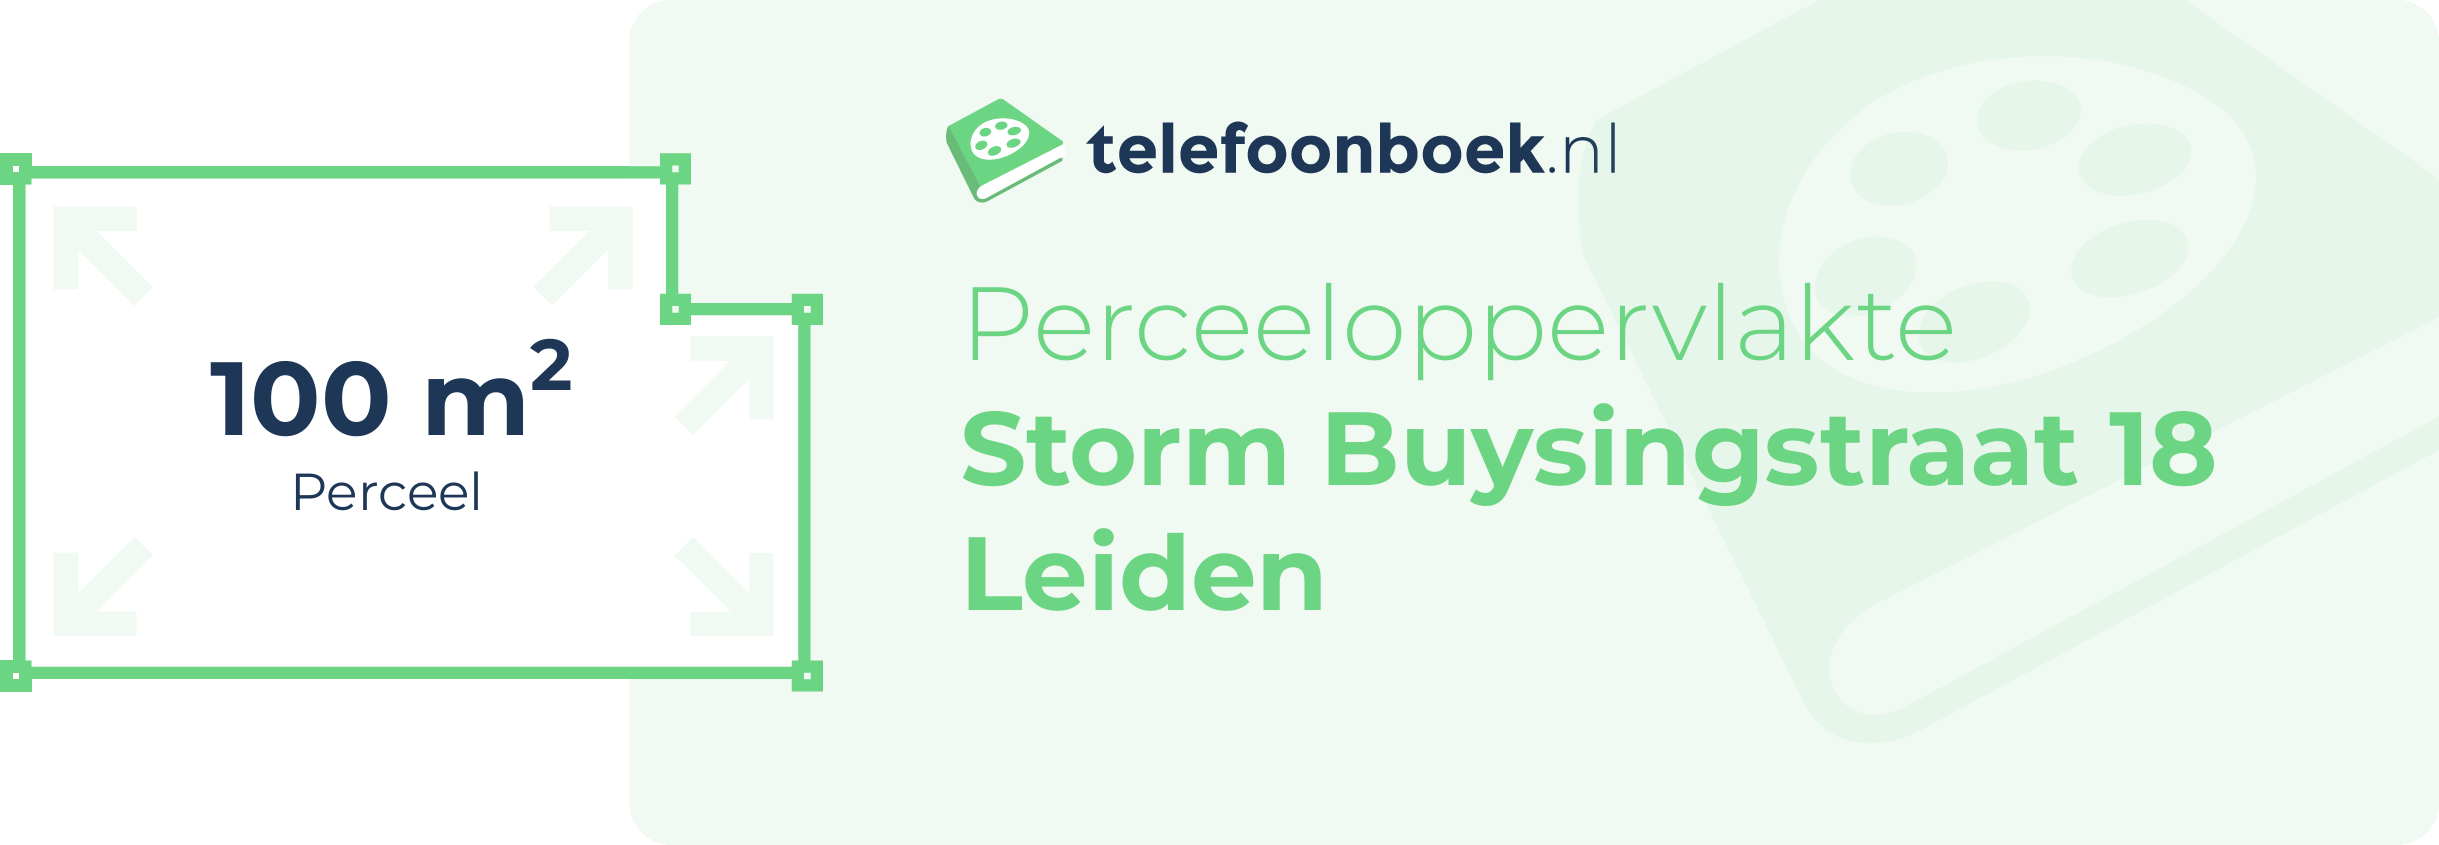 Perceeloppervlakte Storm Buysingstraat 18 Leiden